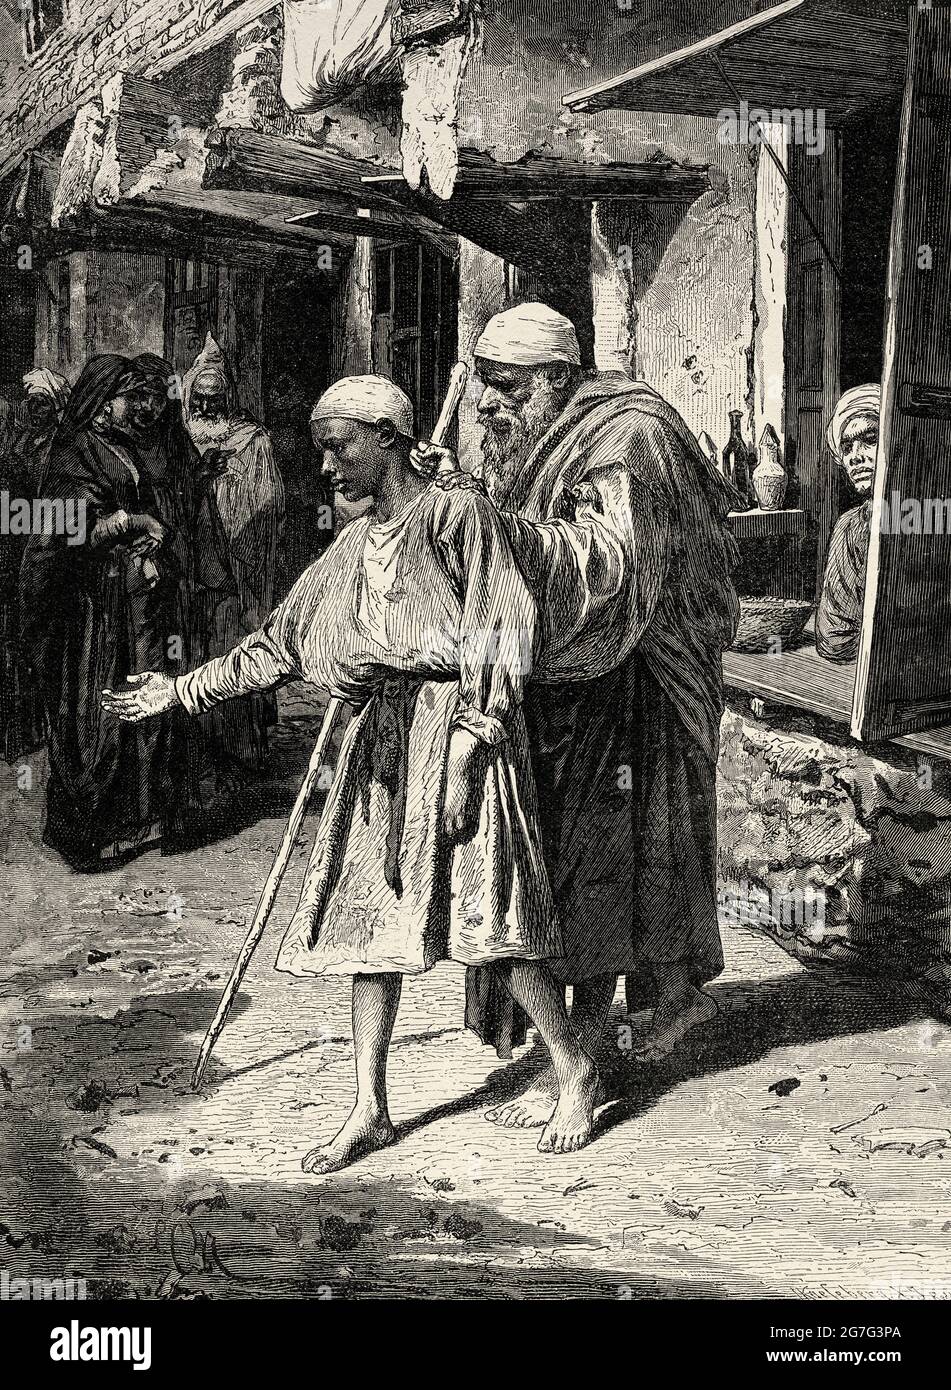 Le mendiant égyptien aveugle supplie pour des almes dans les rues du Caire, de l'Égypte, de l'Afrique du Nord. Ancienne illustration gravée du XIXe siècle d'El Mundo Ilustrado 1880 Banque D'Images